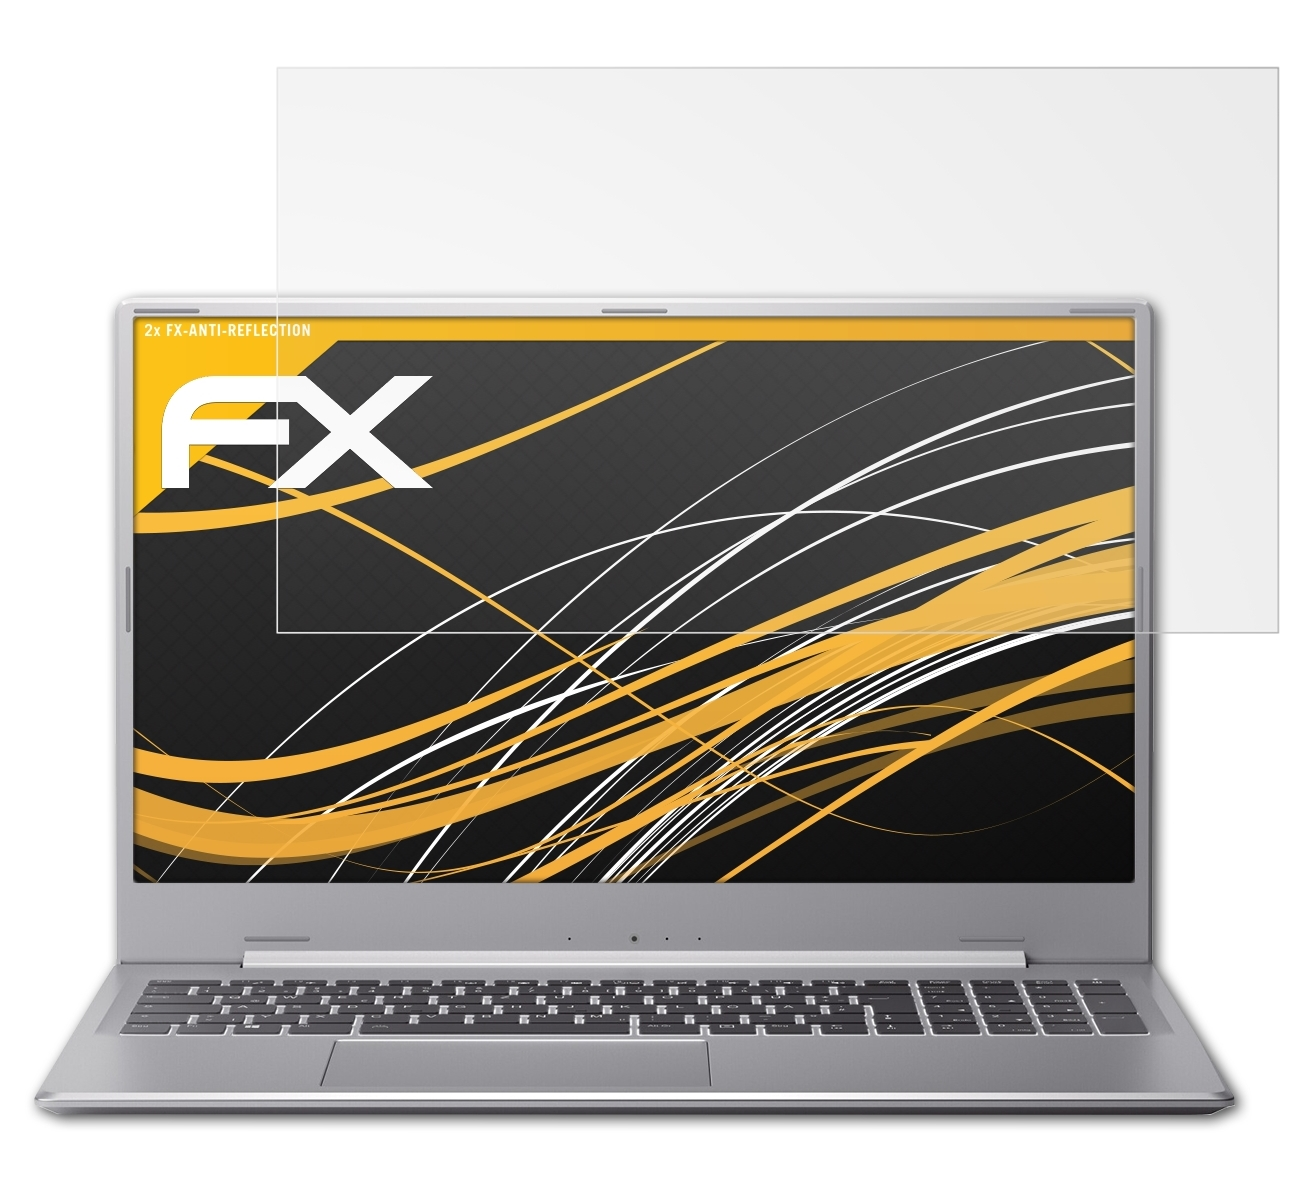 ATFOLIX 2x FX-Antireflex Displayschutz(für Medion AKOYA (MD62180)) P17609